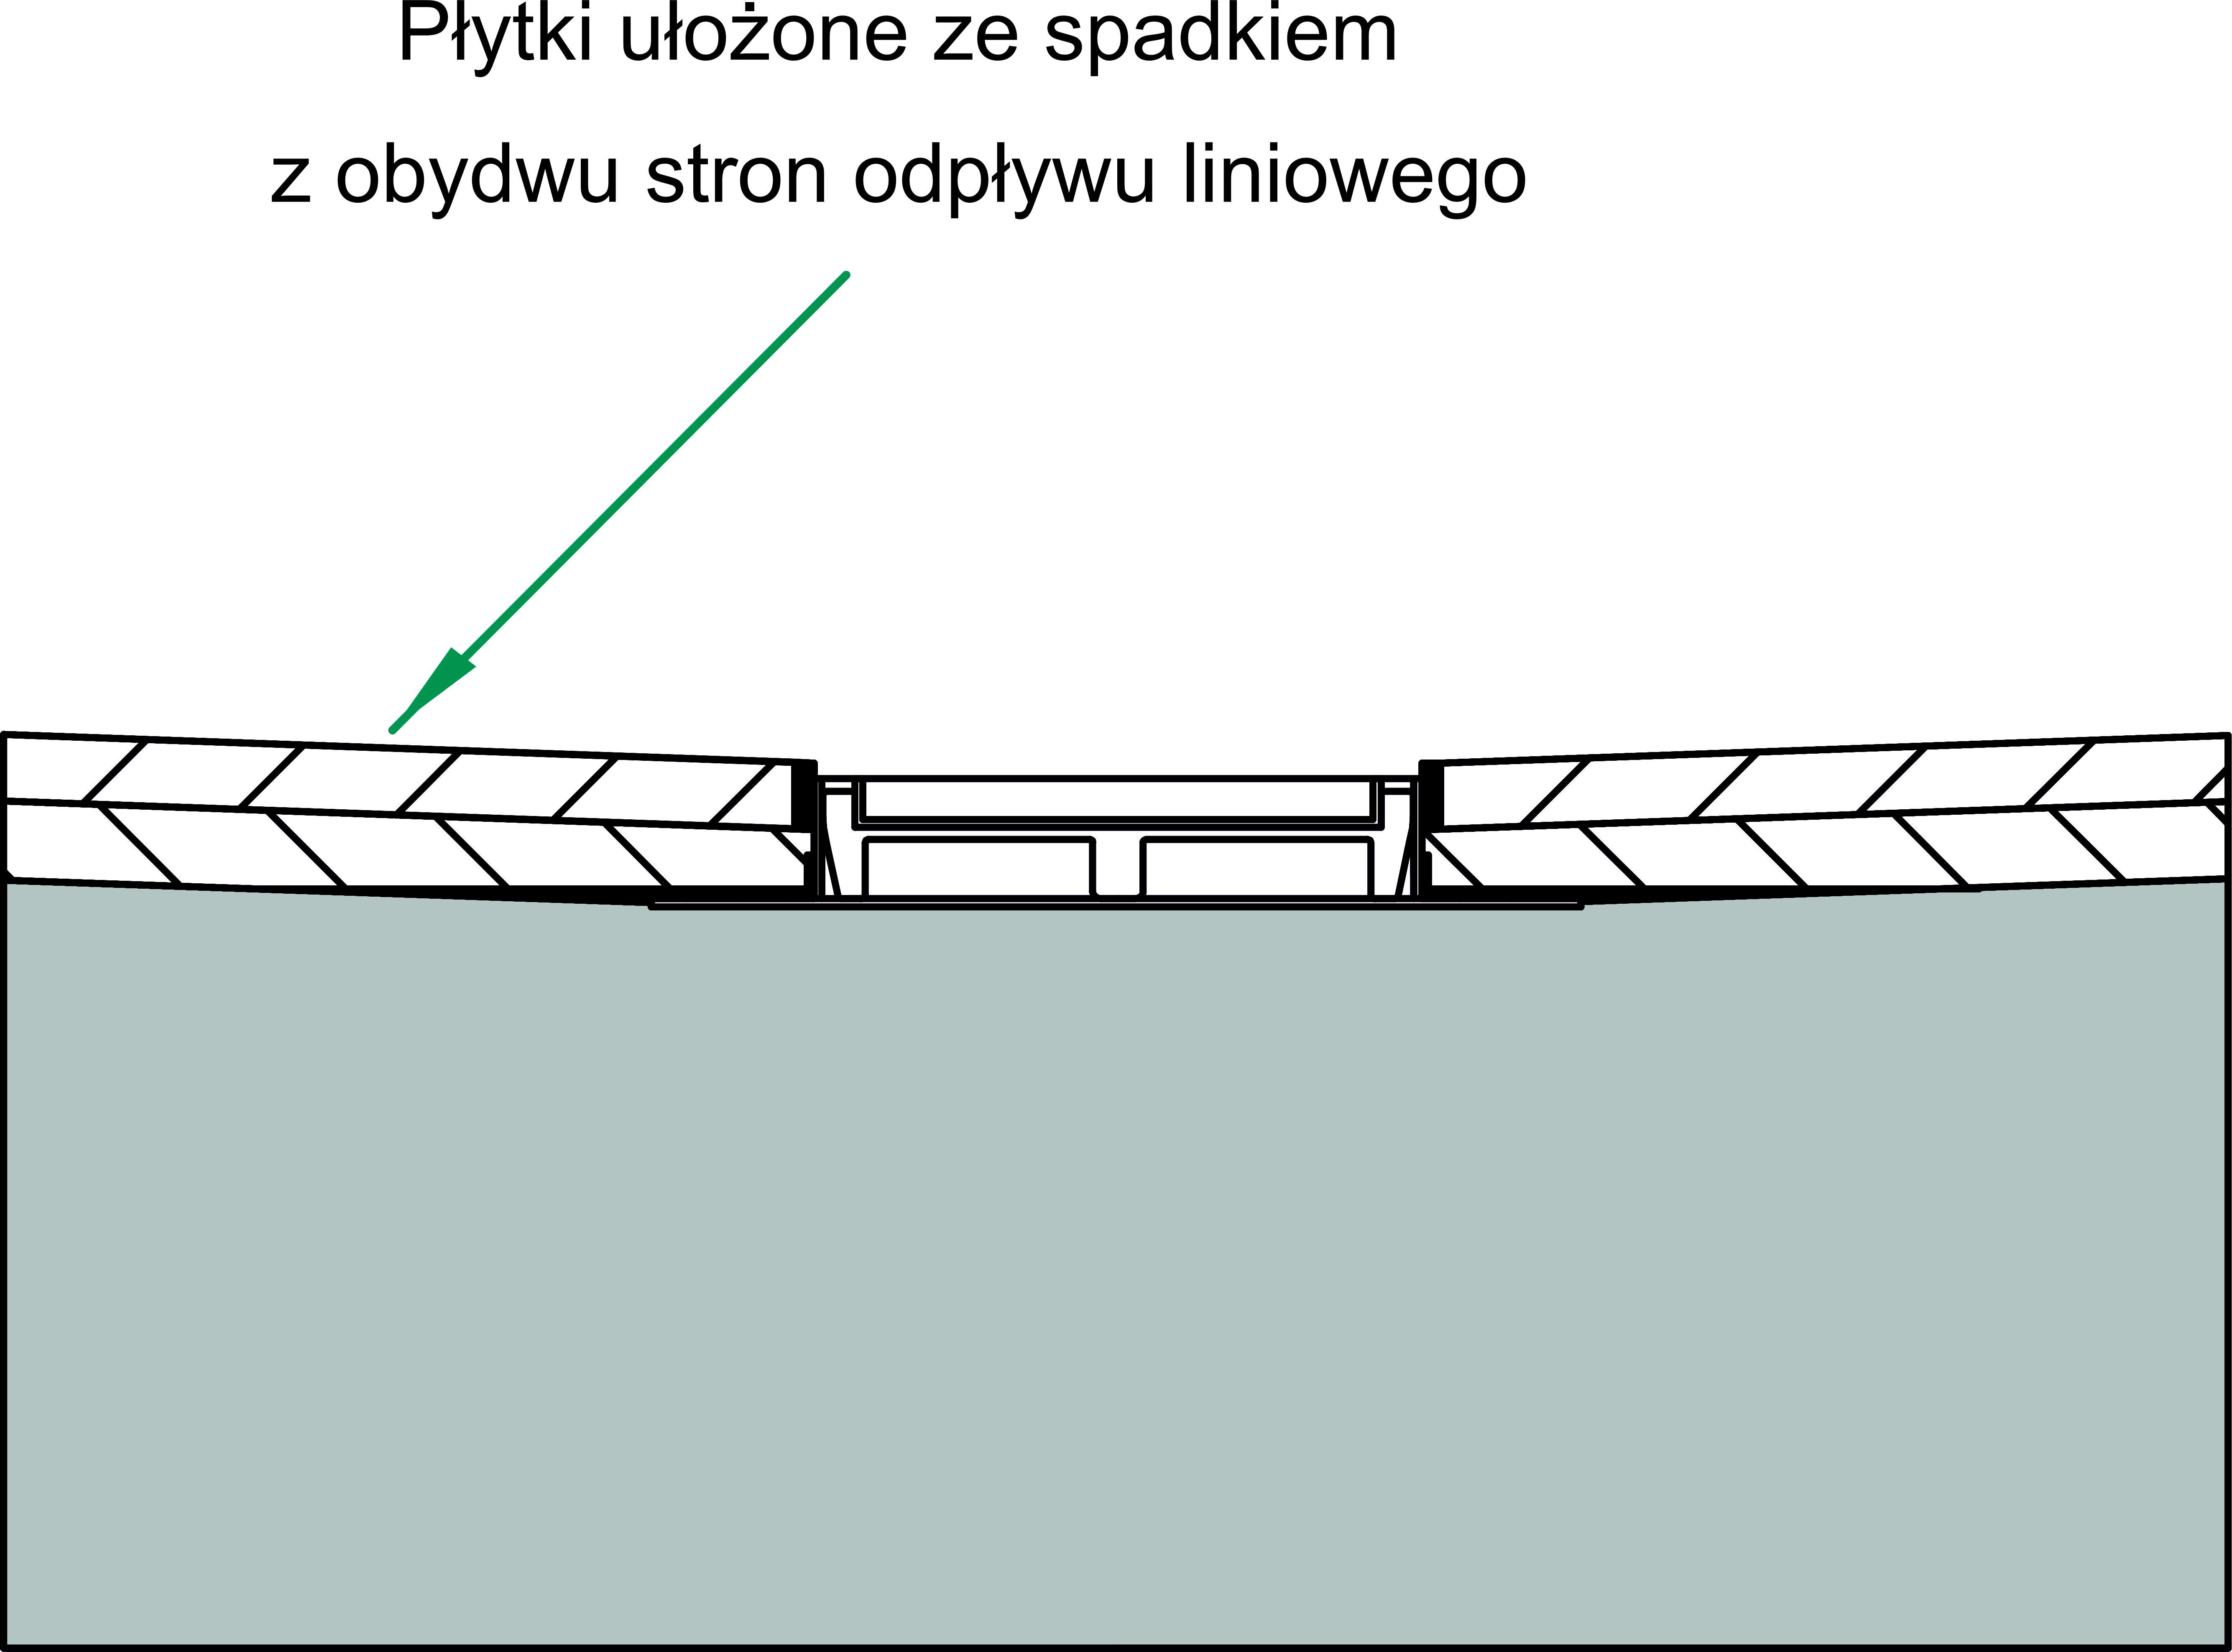 Schemat obrazujący jak powinno wyglądać ułożenie płytek  ze spadkiem wokół odpływu liniowego klasycznego